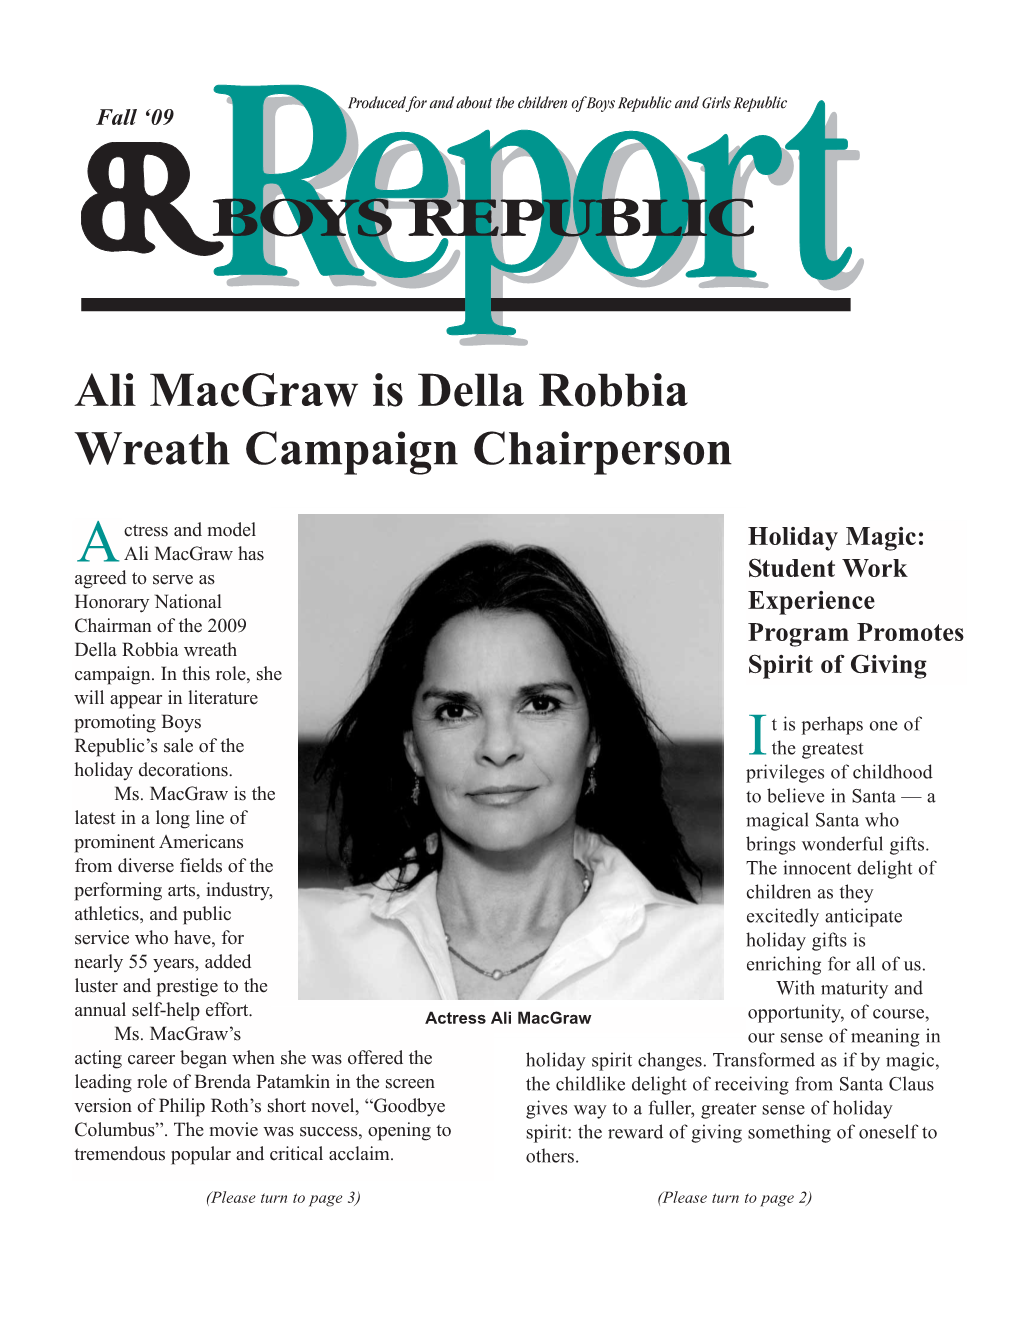 Ali Macgraw Is Della Robbia Wreath Campaign Chairperson